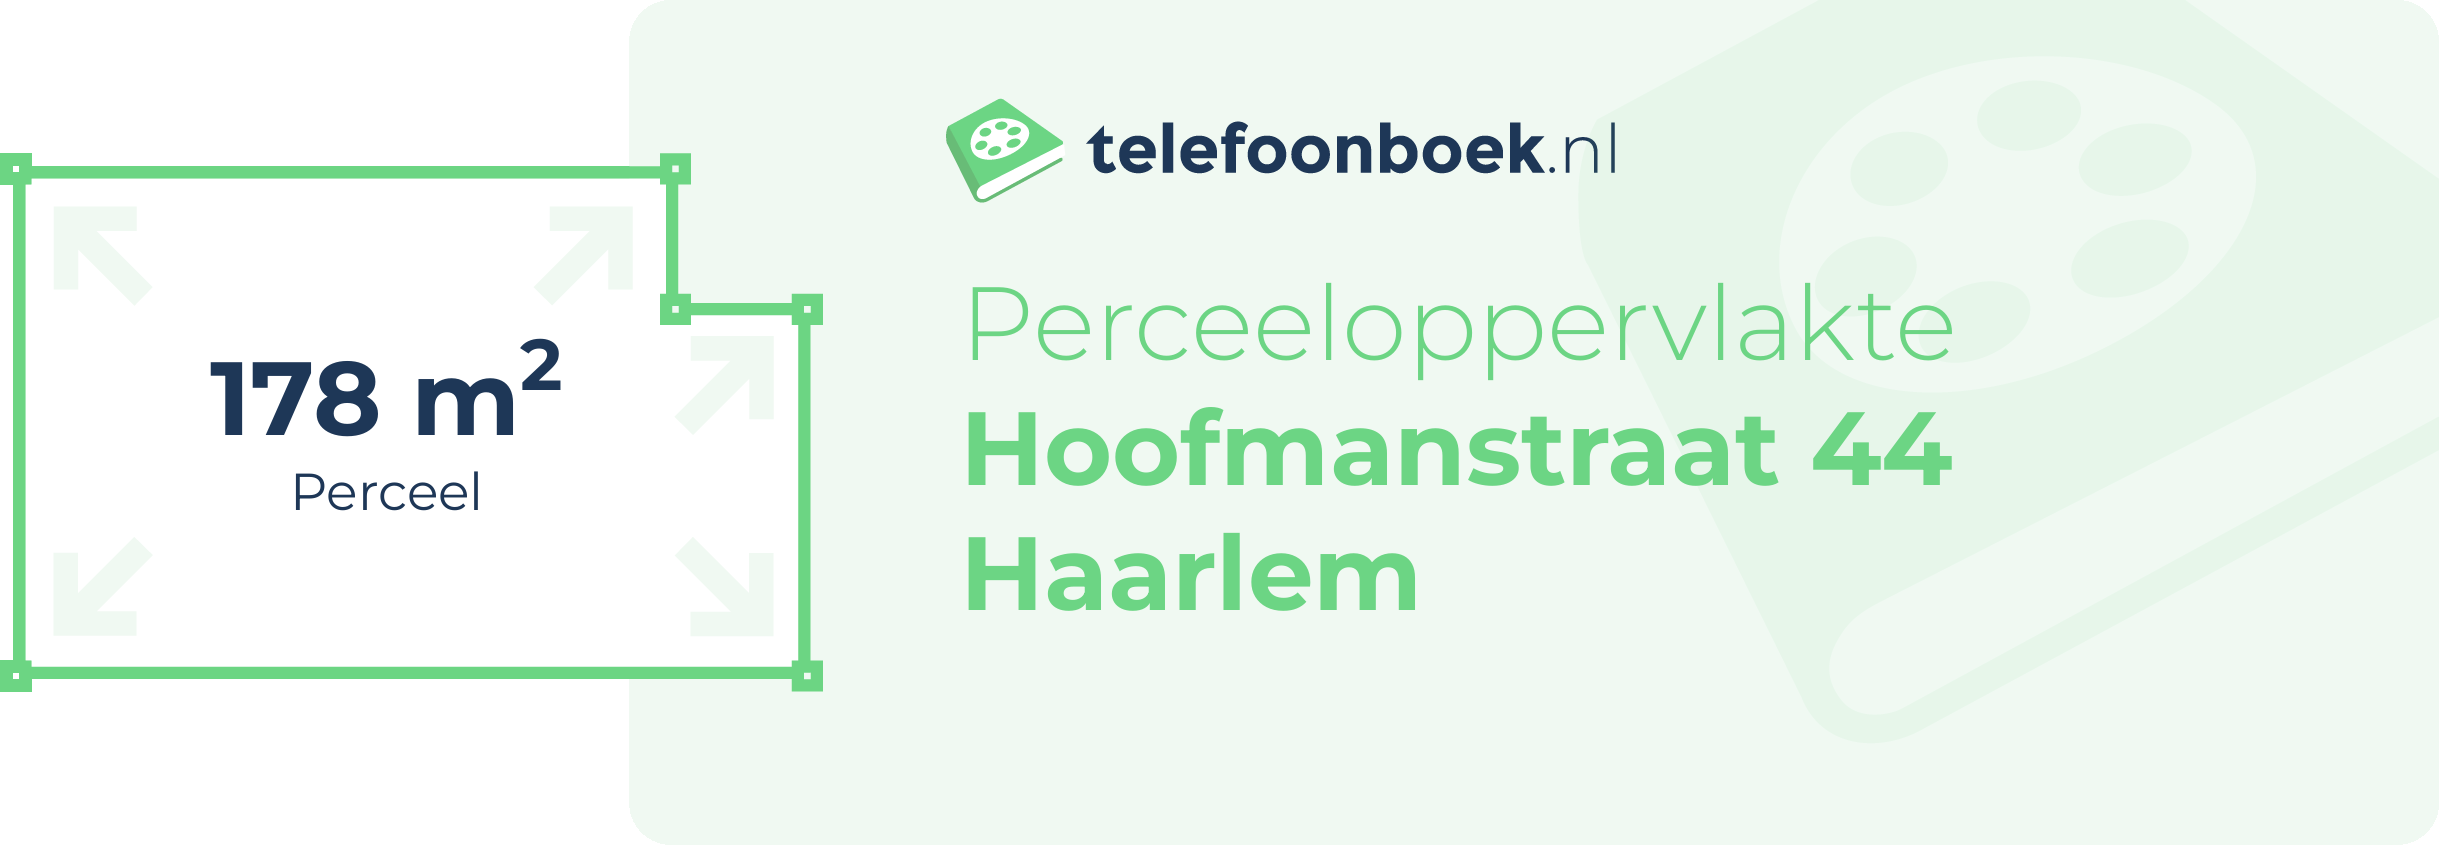 Perceeloppervlakte Hoofmanstraat 44 Haarlem